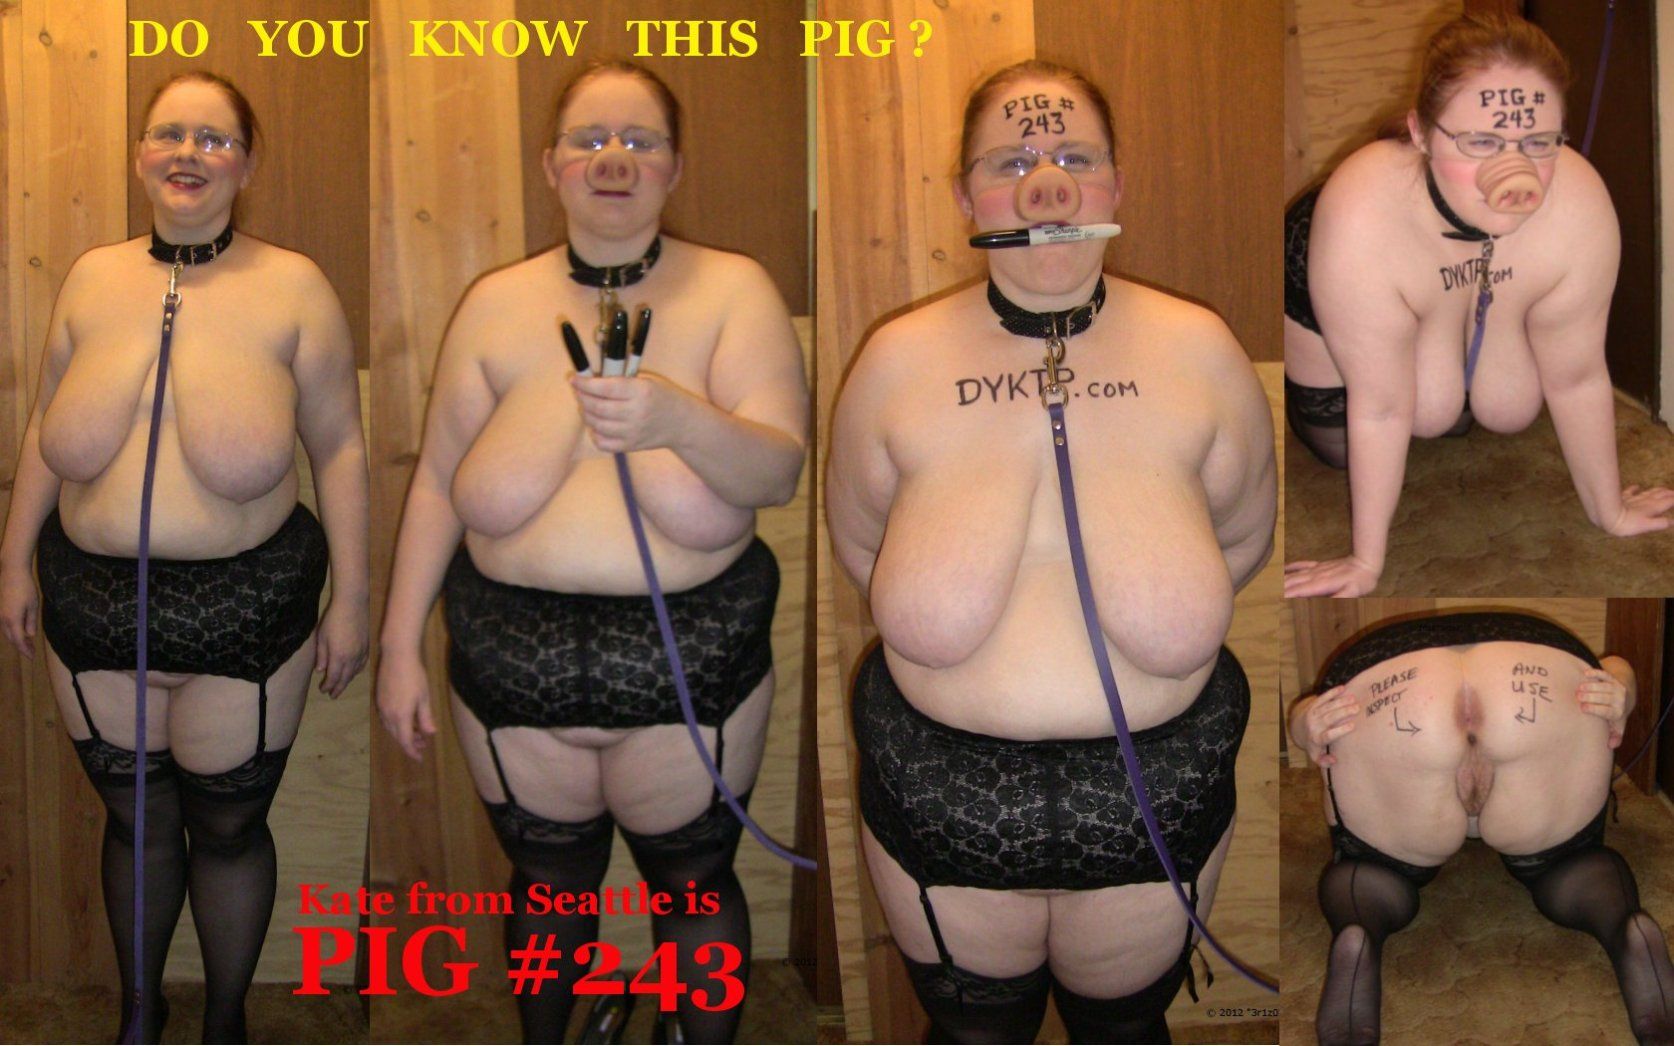 Pig #243